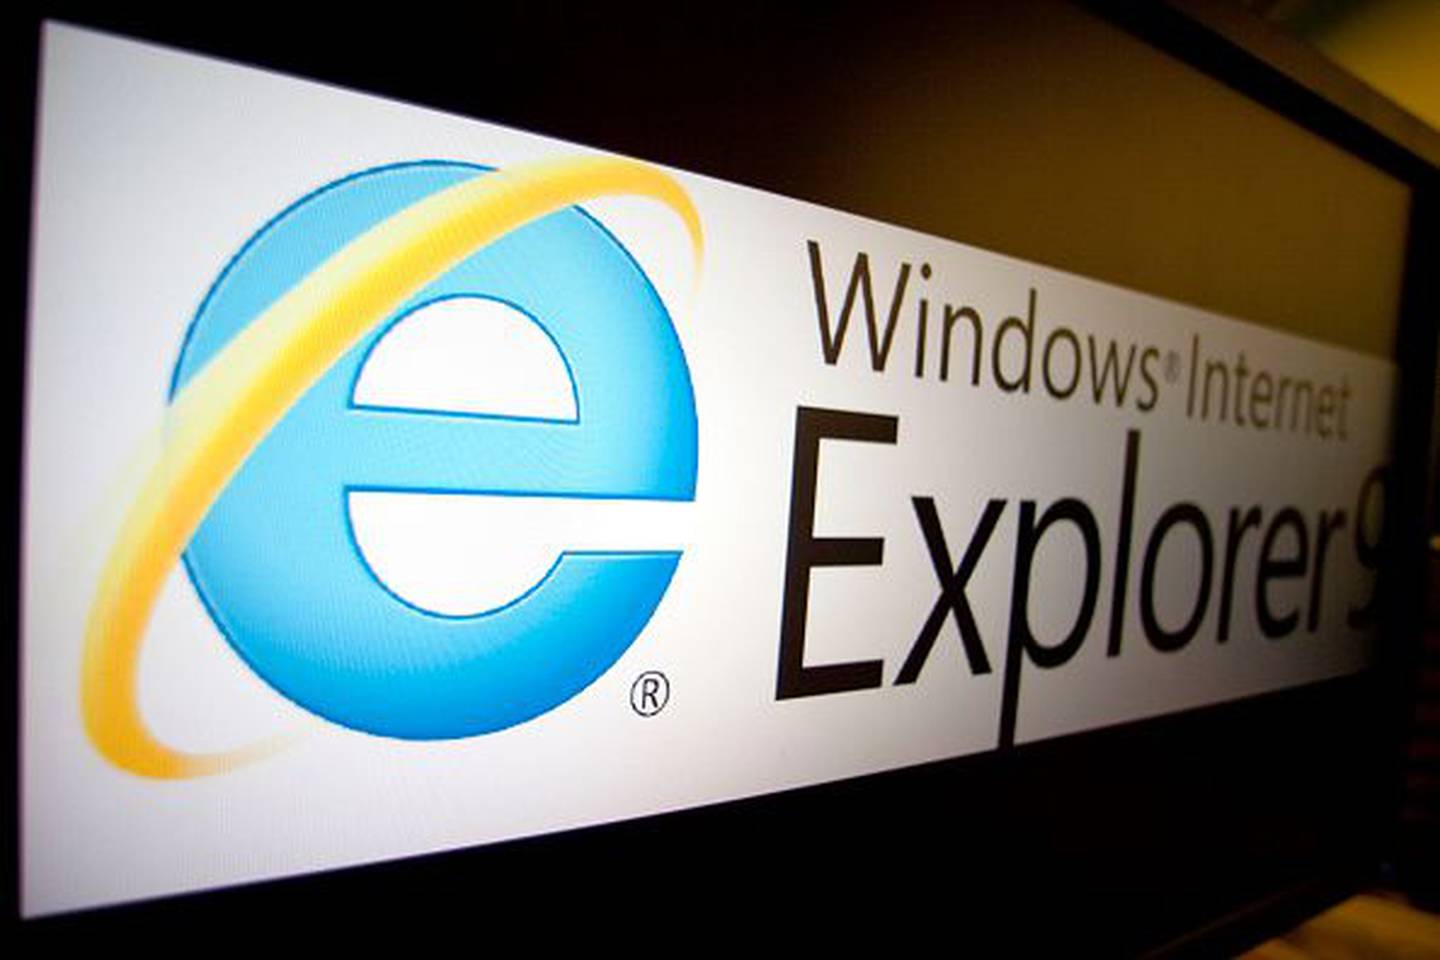 El logo de Internet Explorer 9 de Microsoft Corp. se muestra en el monitor de un ordenador en Washington, D.C., EE.UU. Fotógrafo: Andrew Harrer/Bloomberg